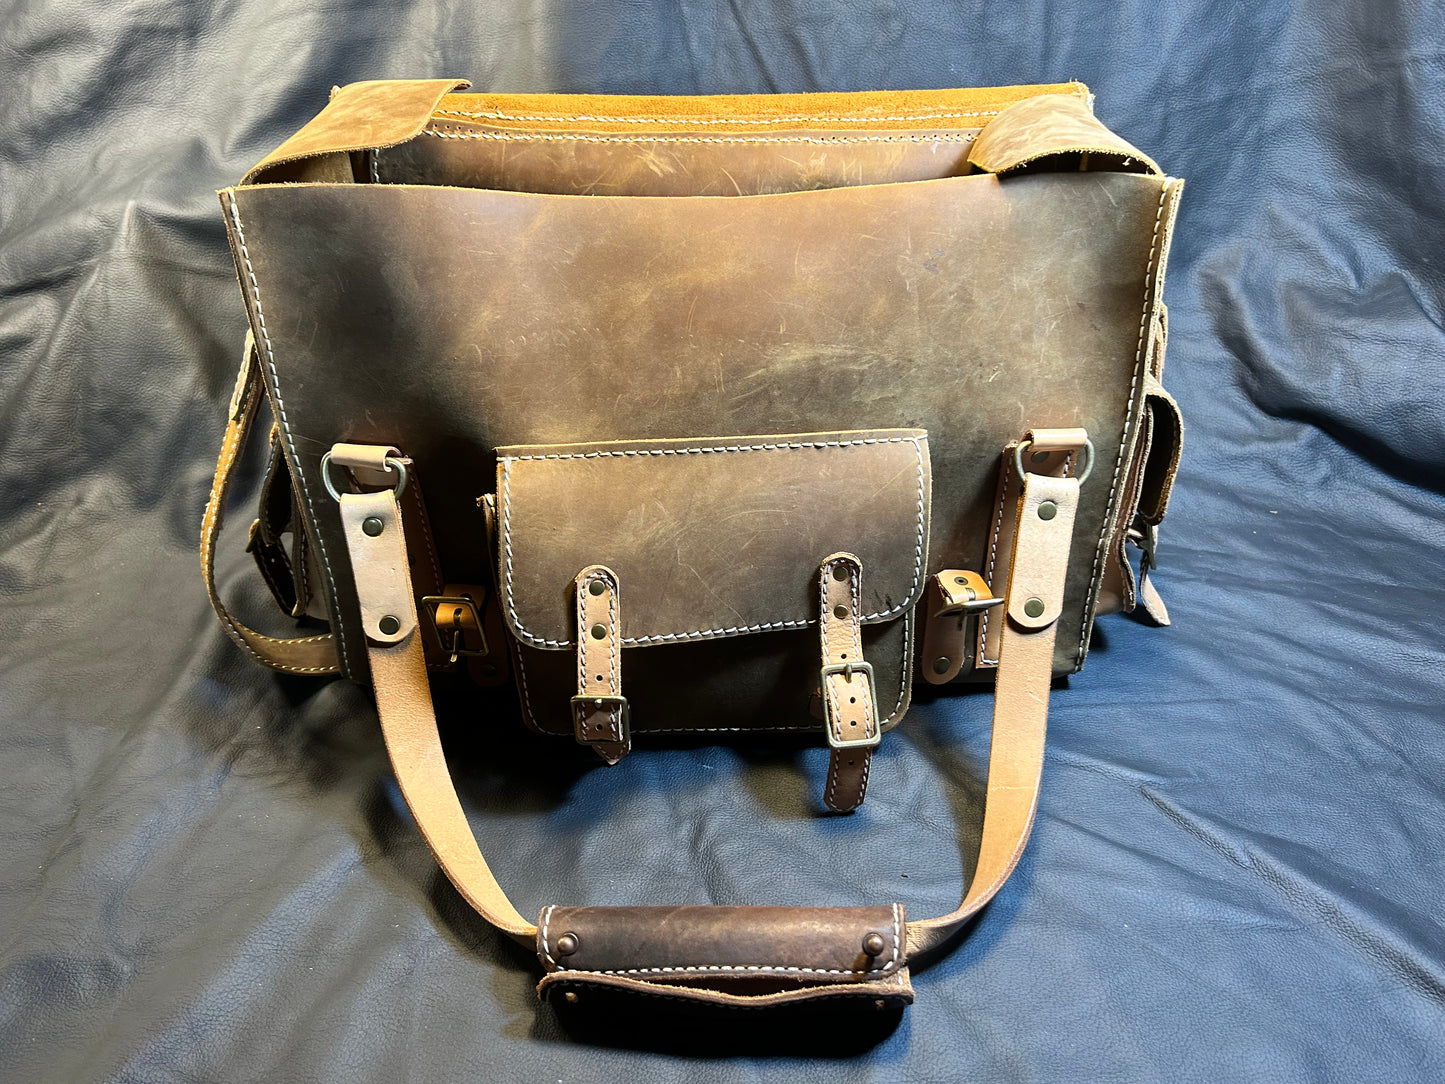 Large Explorer Travel Bag (Light) front pocket view